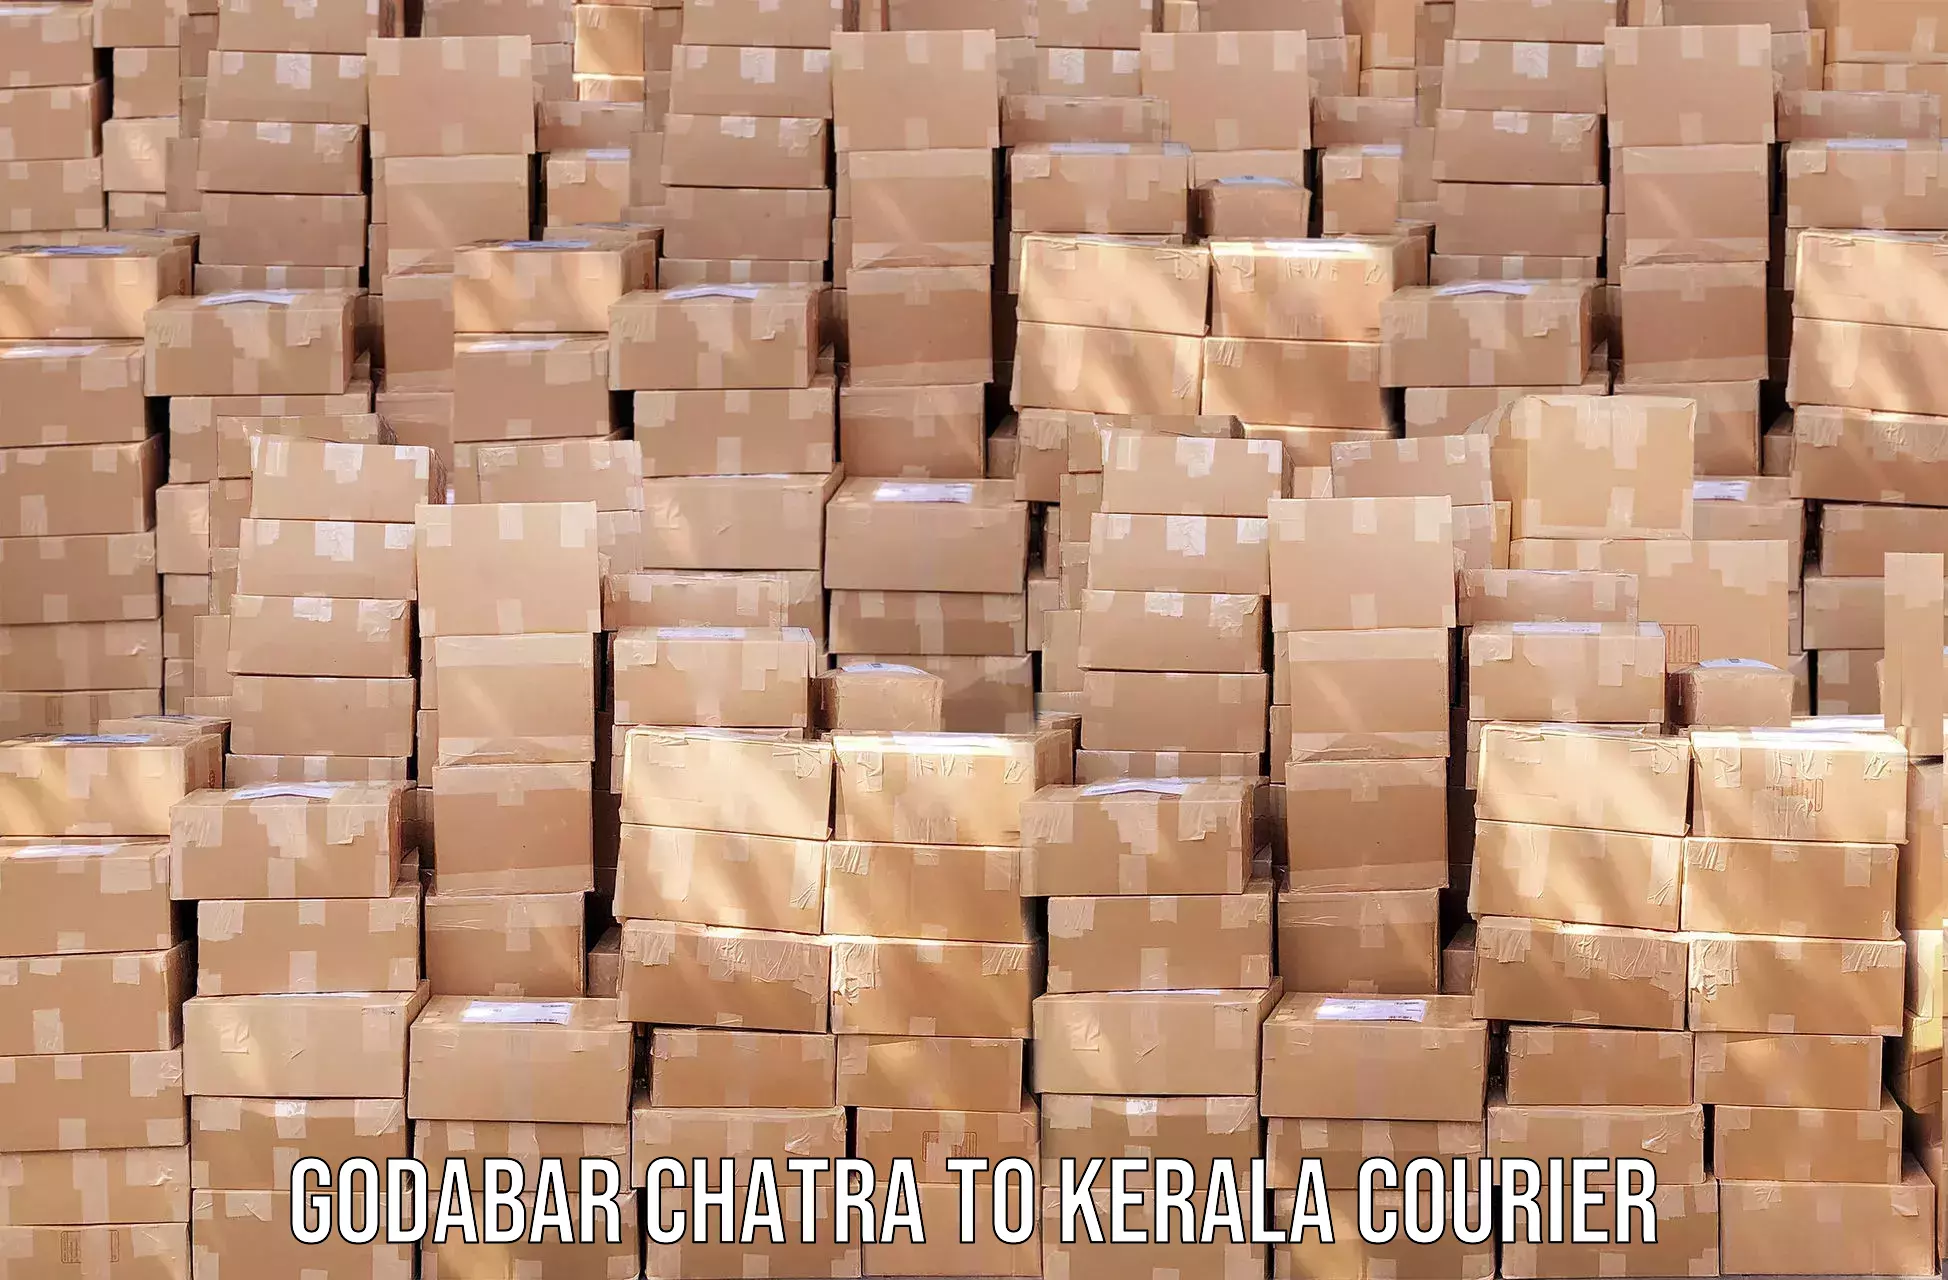 Advanced shipping services Godabar Chatra to Kannapuram